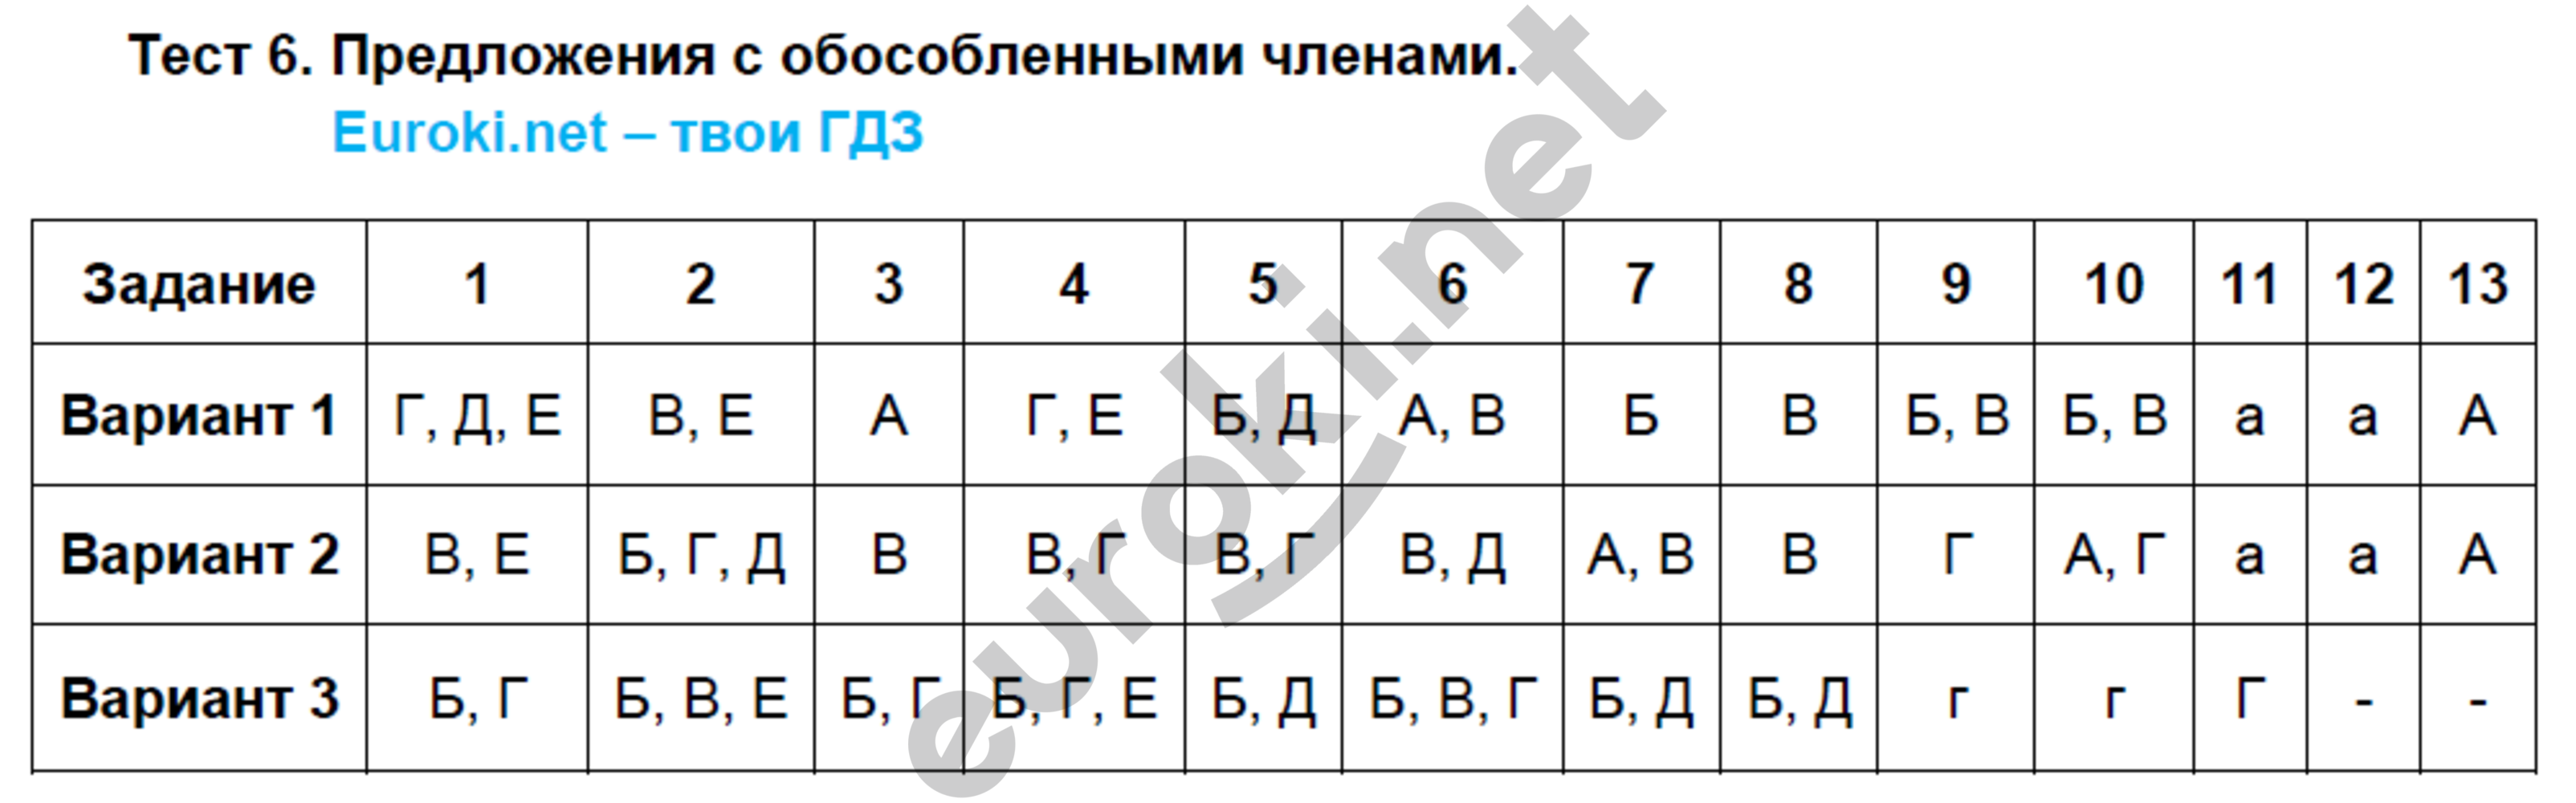 Русский язык восьмой класс вариант первый. Тест предложения с обособленными членами. Тестирования предложения с обособленными членами предложения.